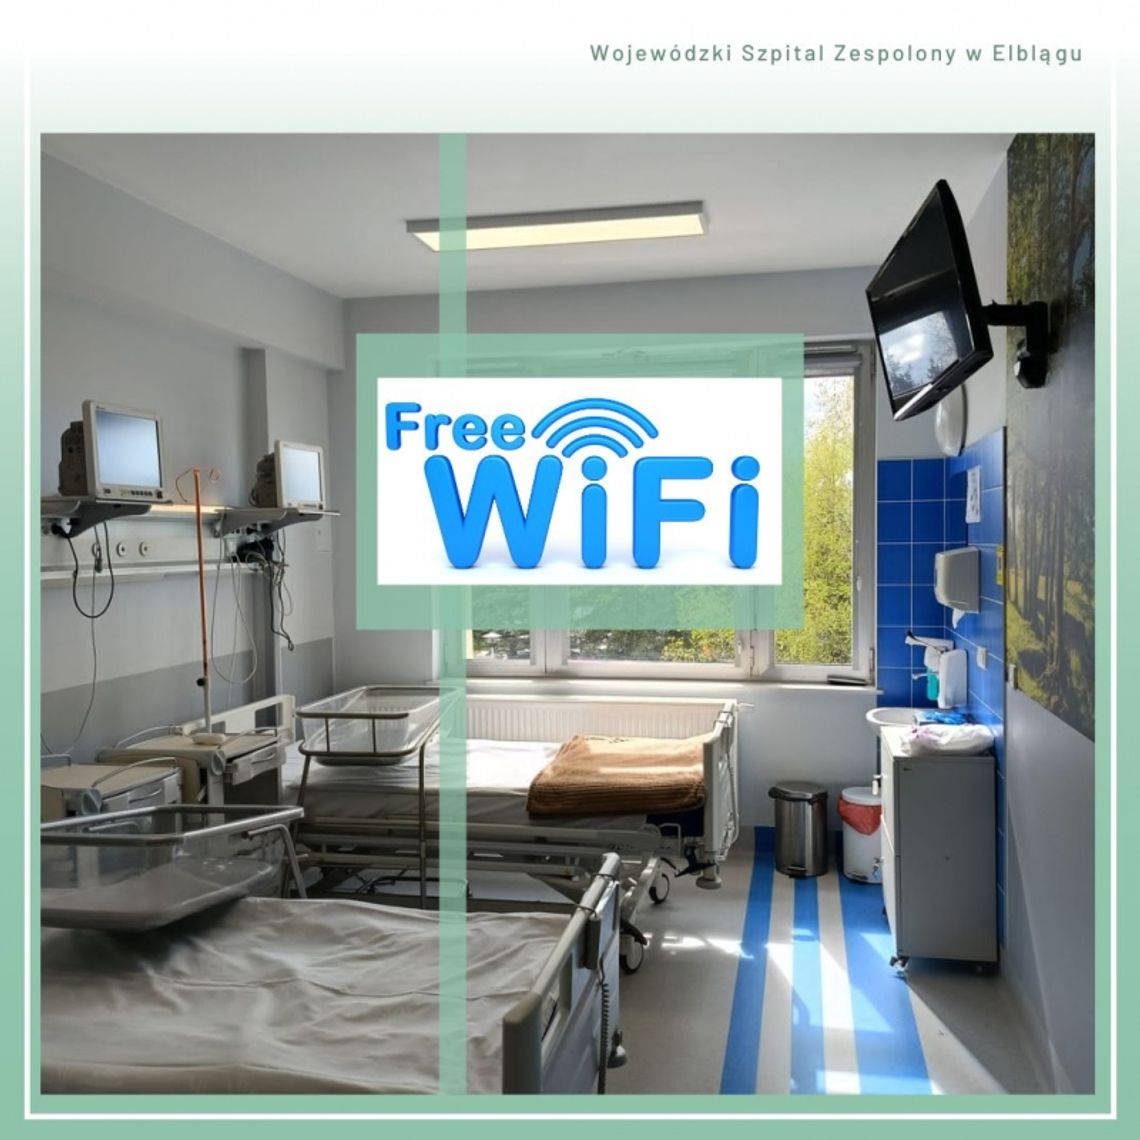 Internet dla pacjentów w Wojewódzkim Szpitalu